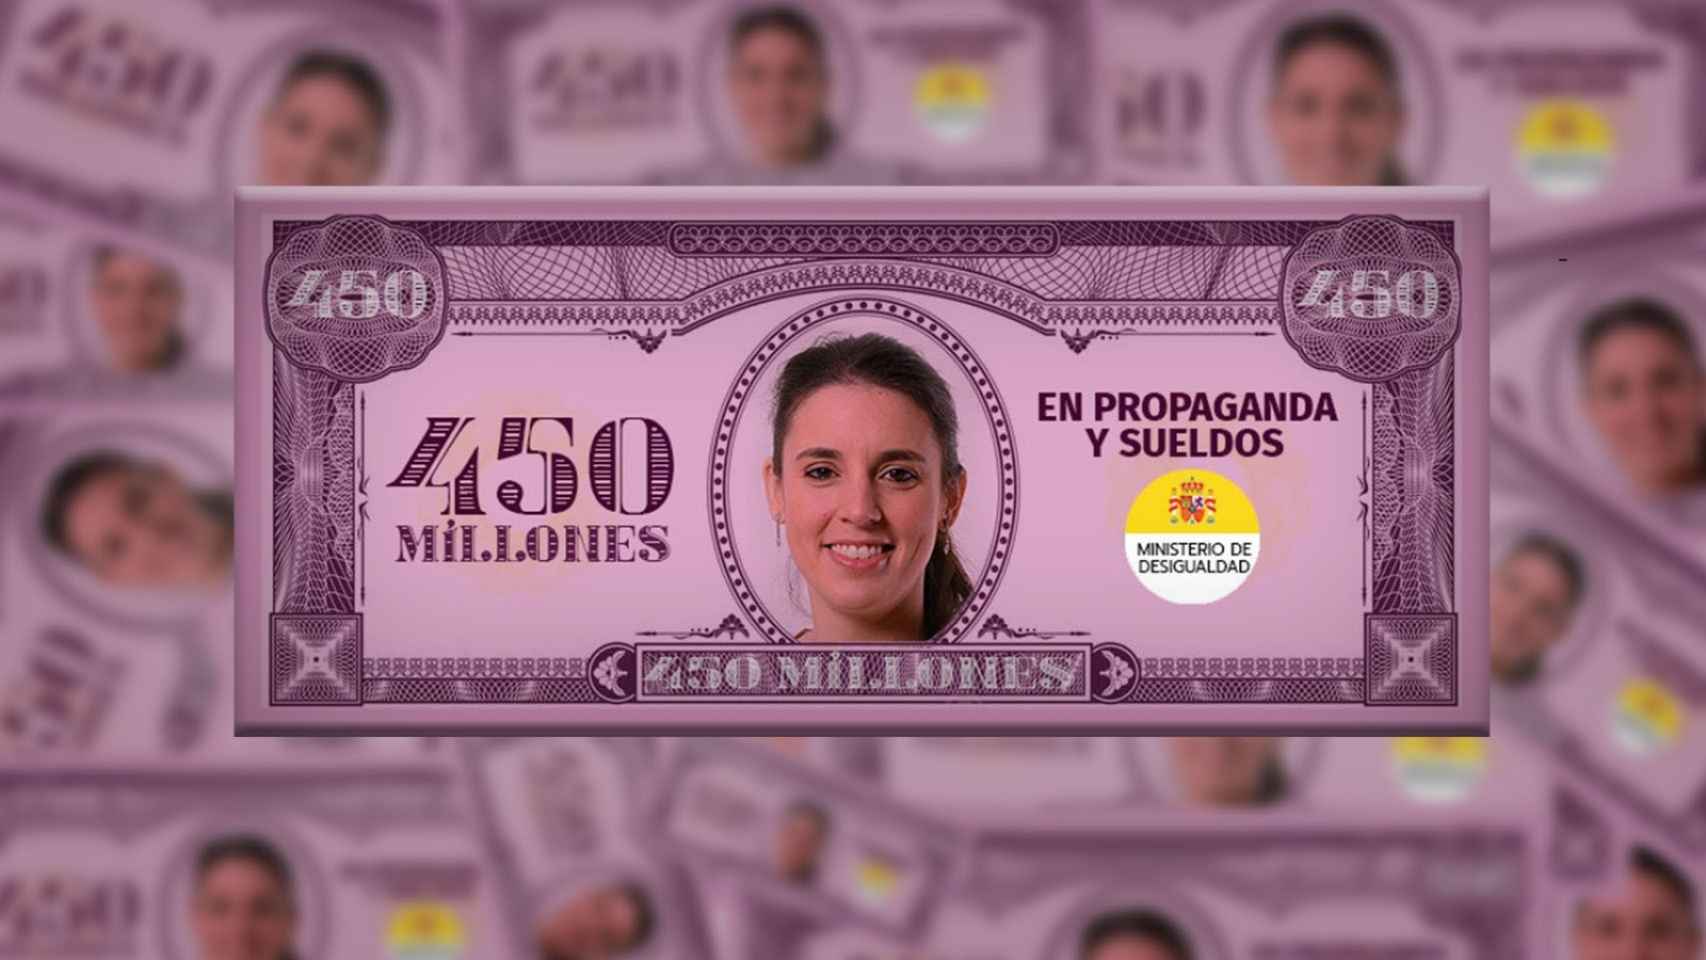 Así son los billetes que ha repartido Frente Obrero con la cara de Irene Montero.